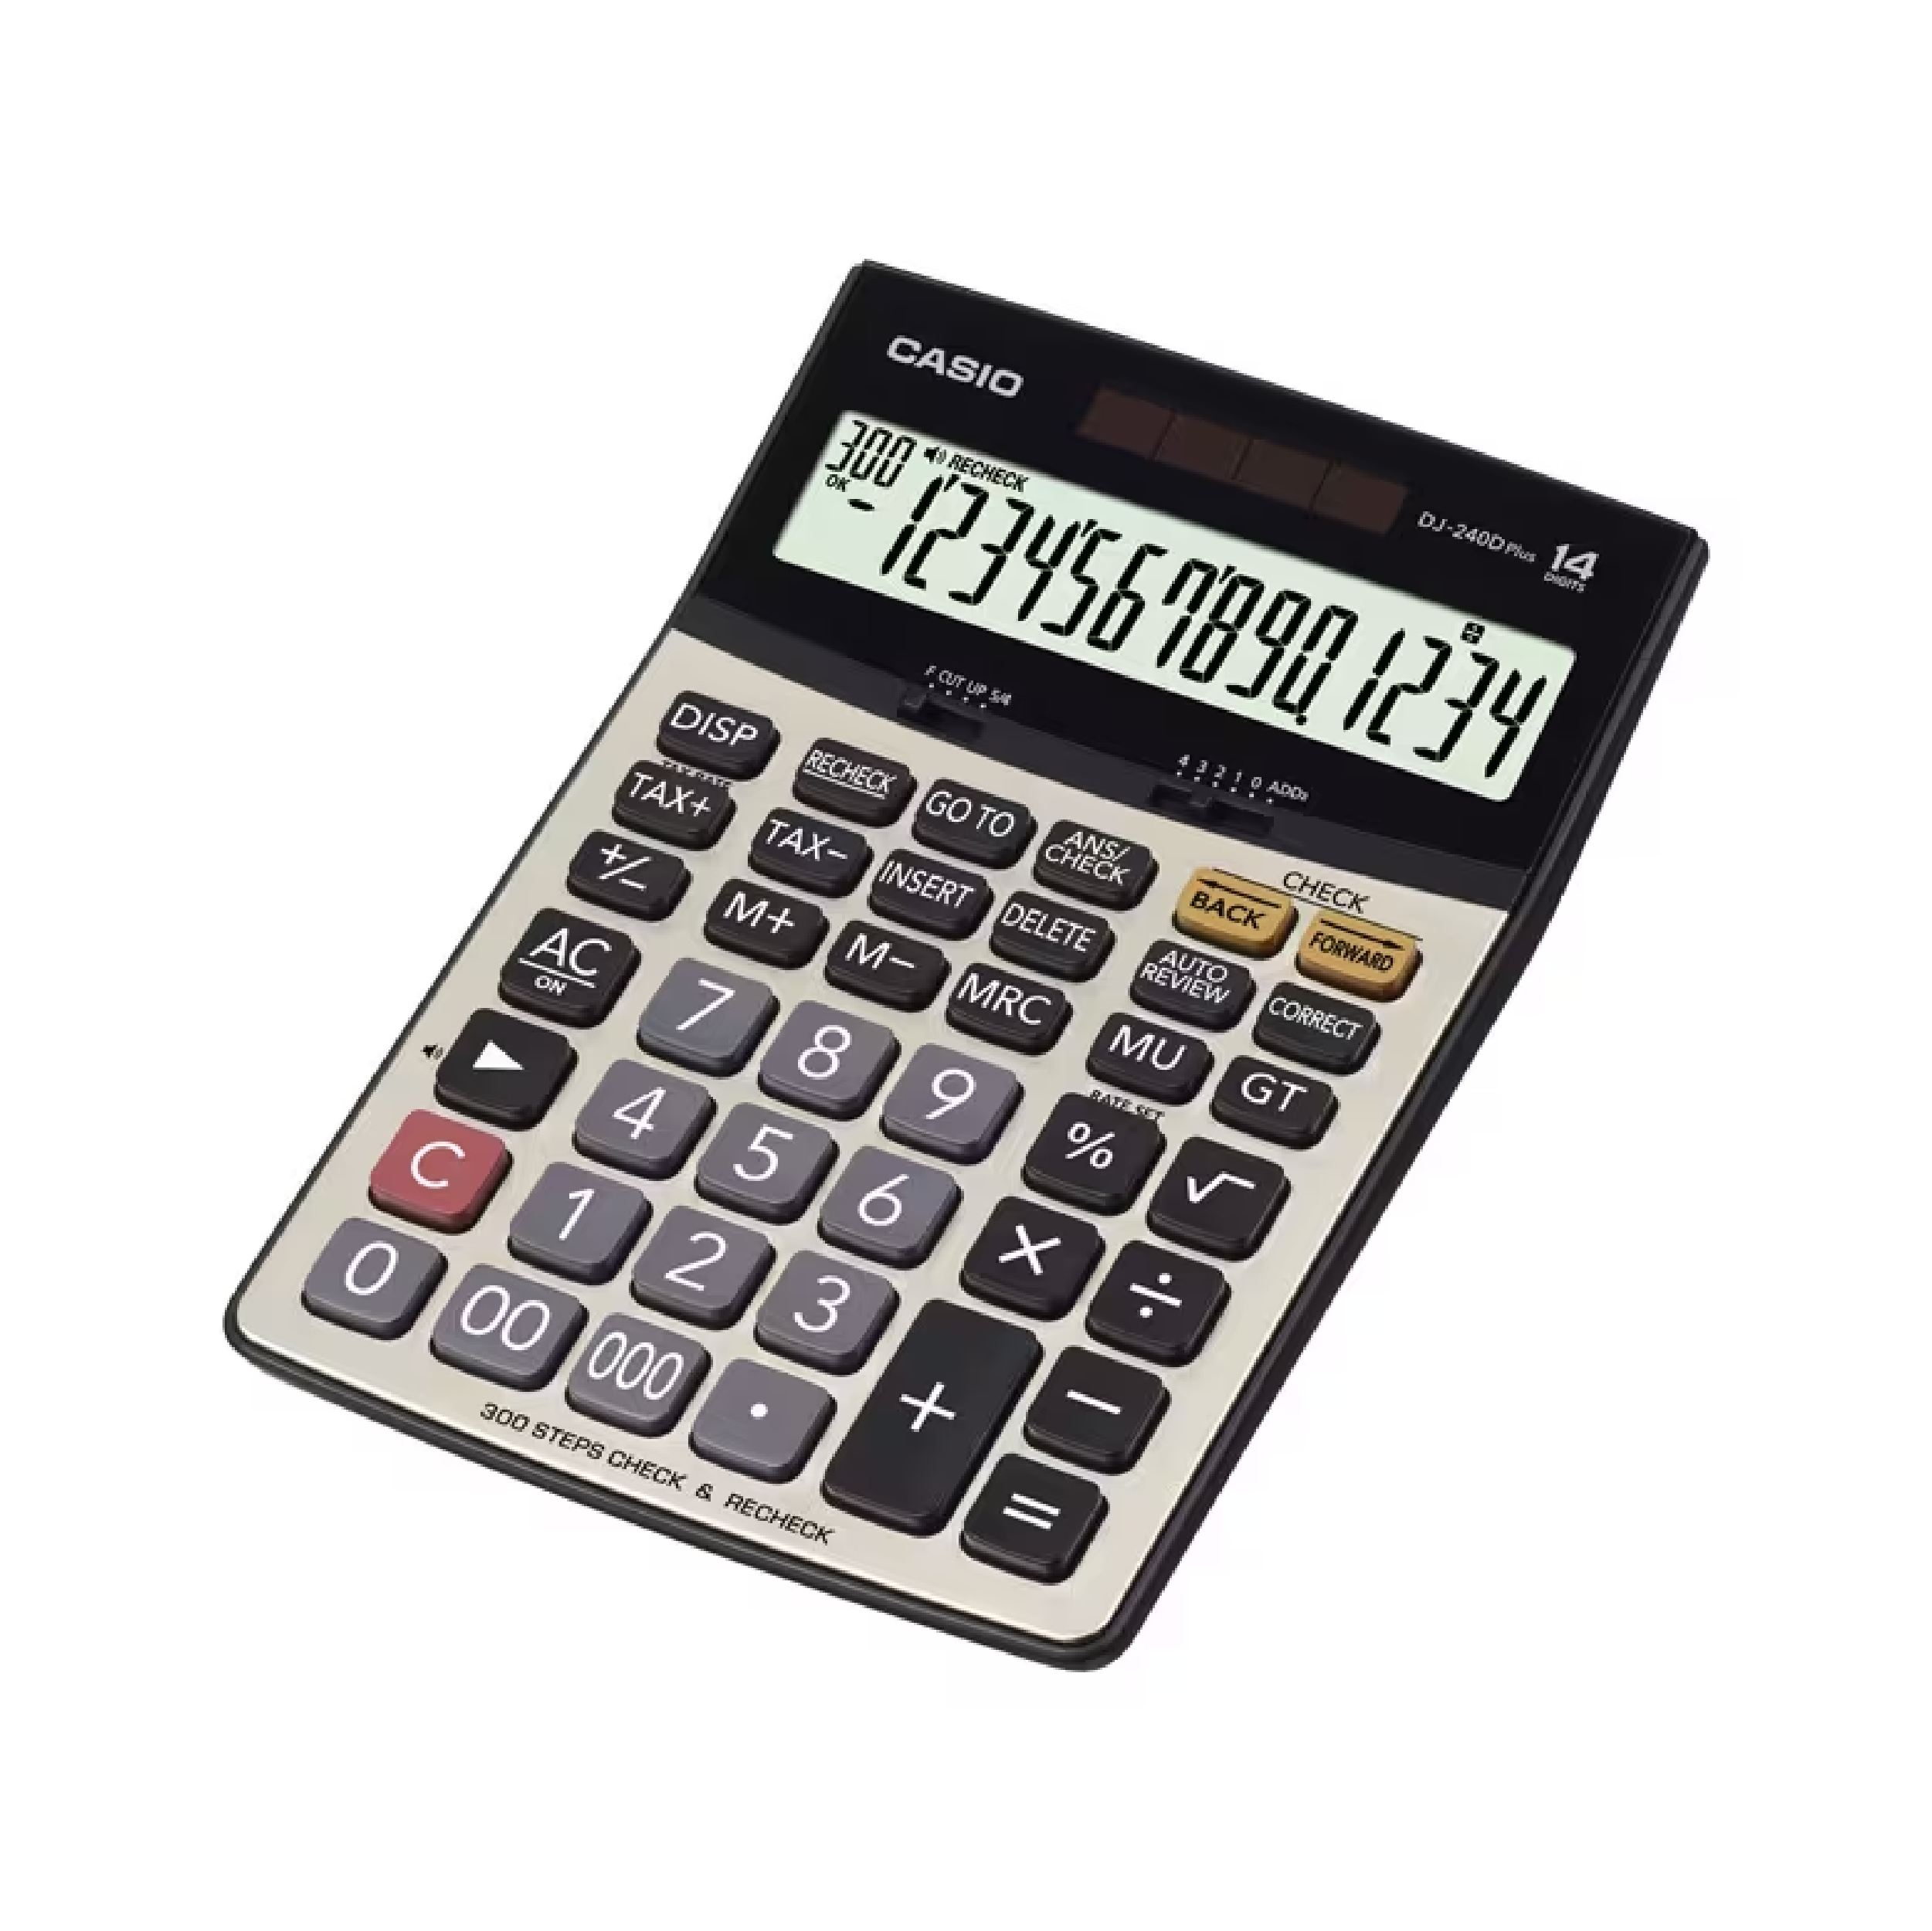 Casio 14-Digit Calculator, Desktop Type (DJ-240D PLUS)